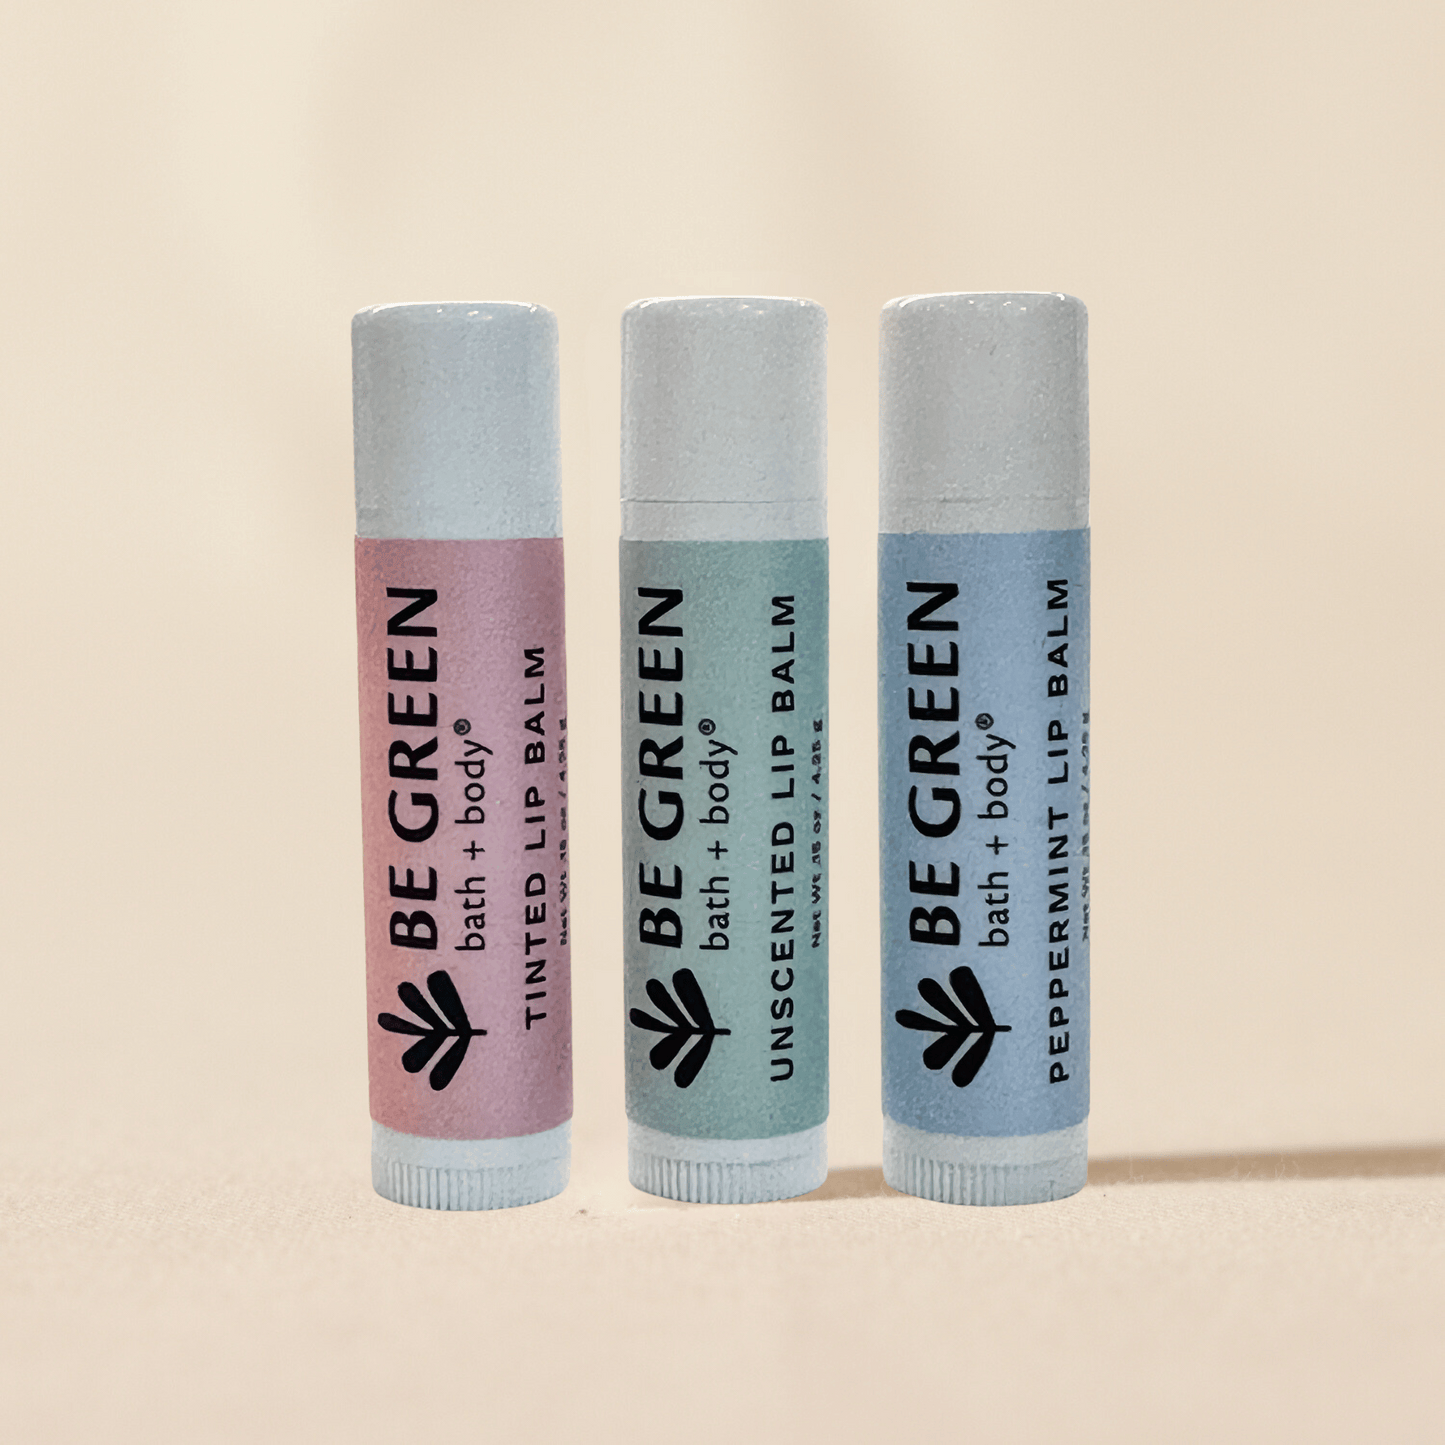 Discounted non-toxic lip balms